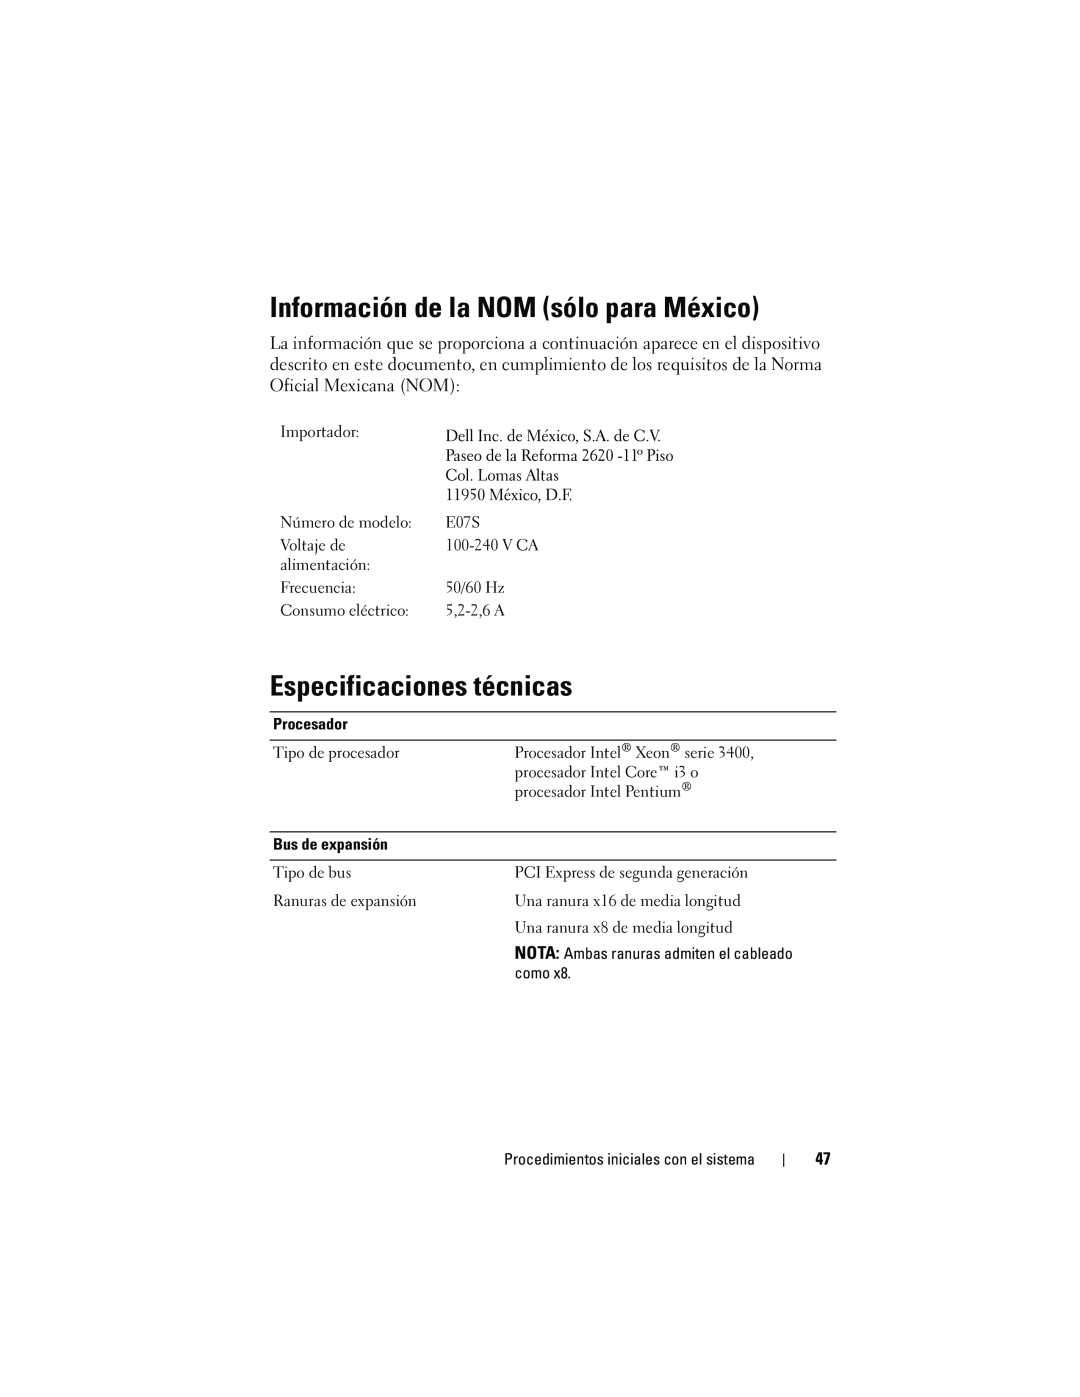 Dell R310 manual Información de la NOM sólo para México, Especificaciones técnicas, V Ca 